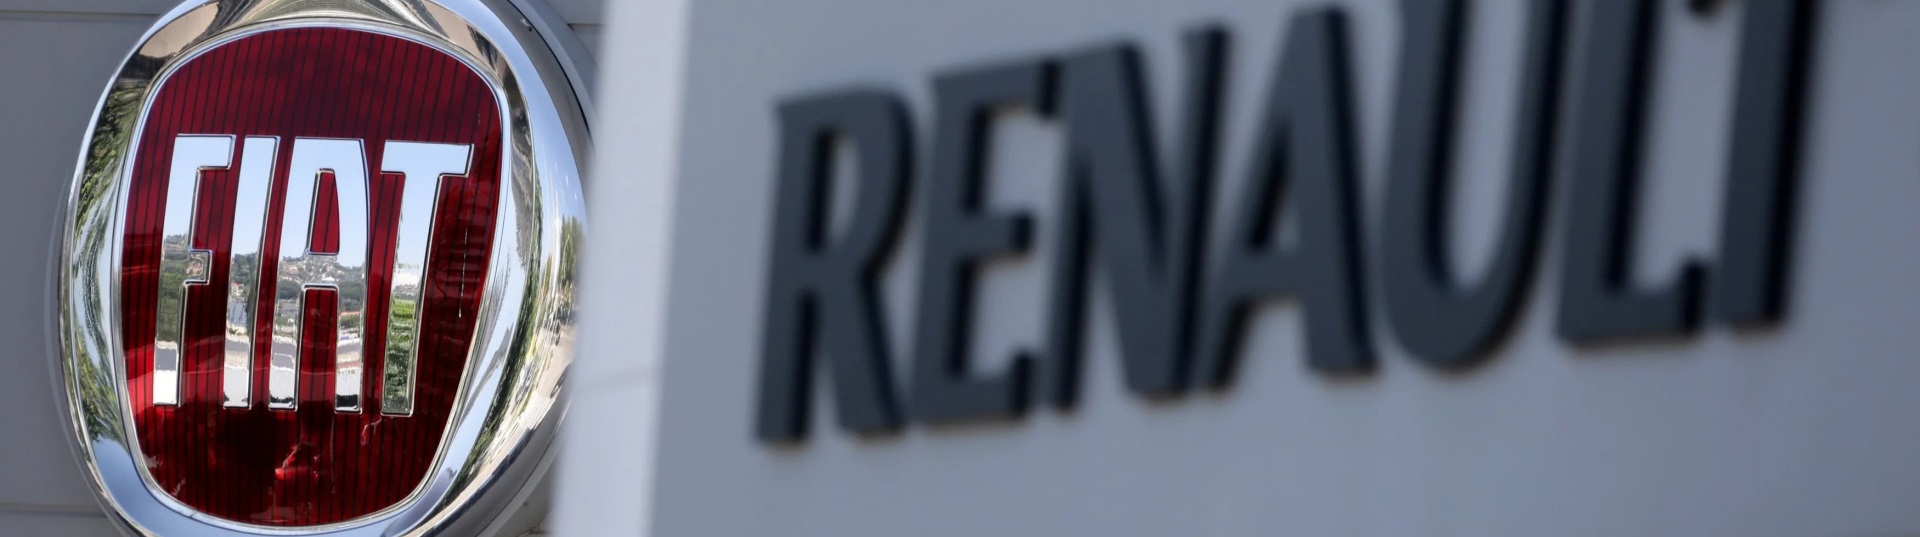 FCA e_Renault_1920